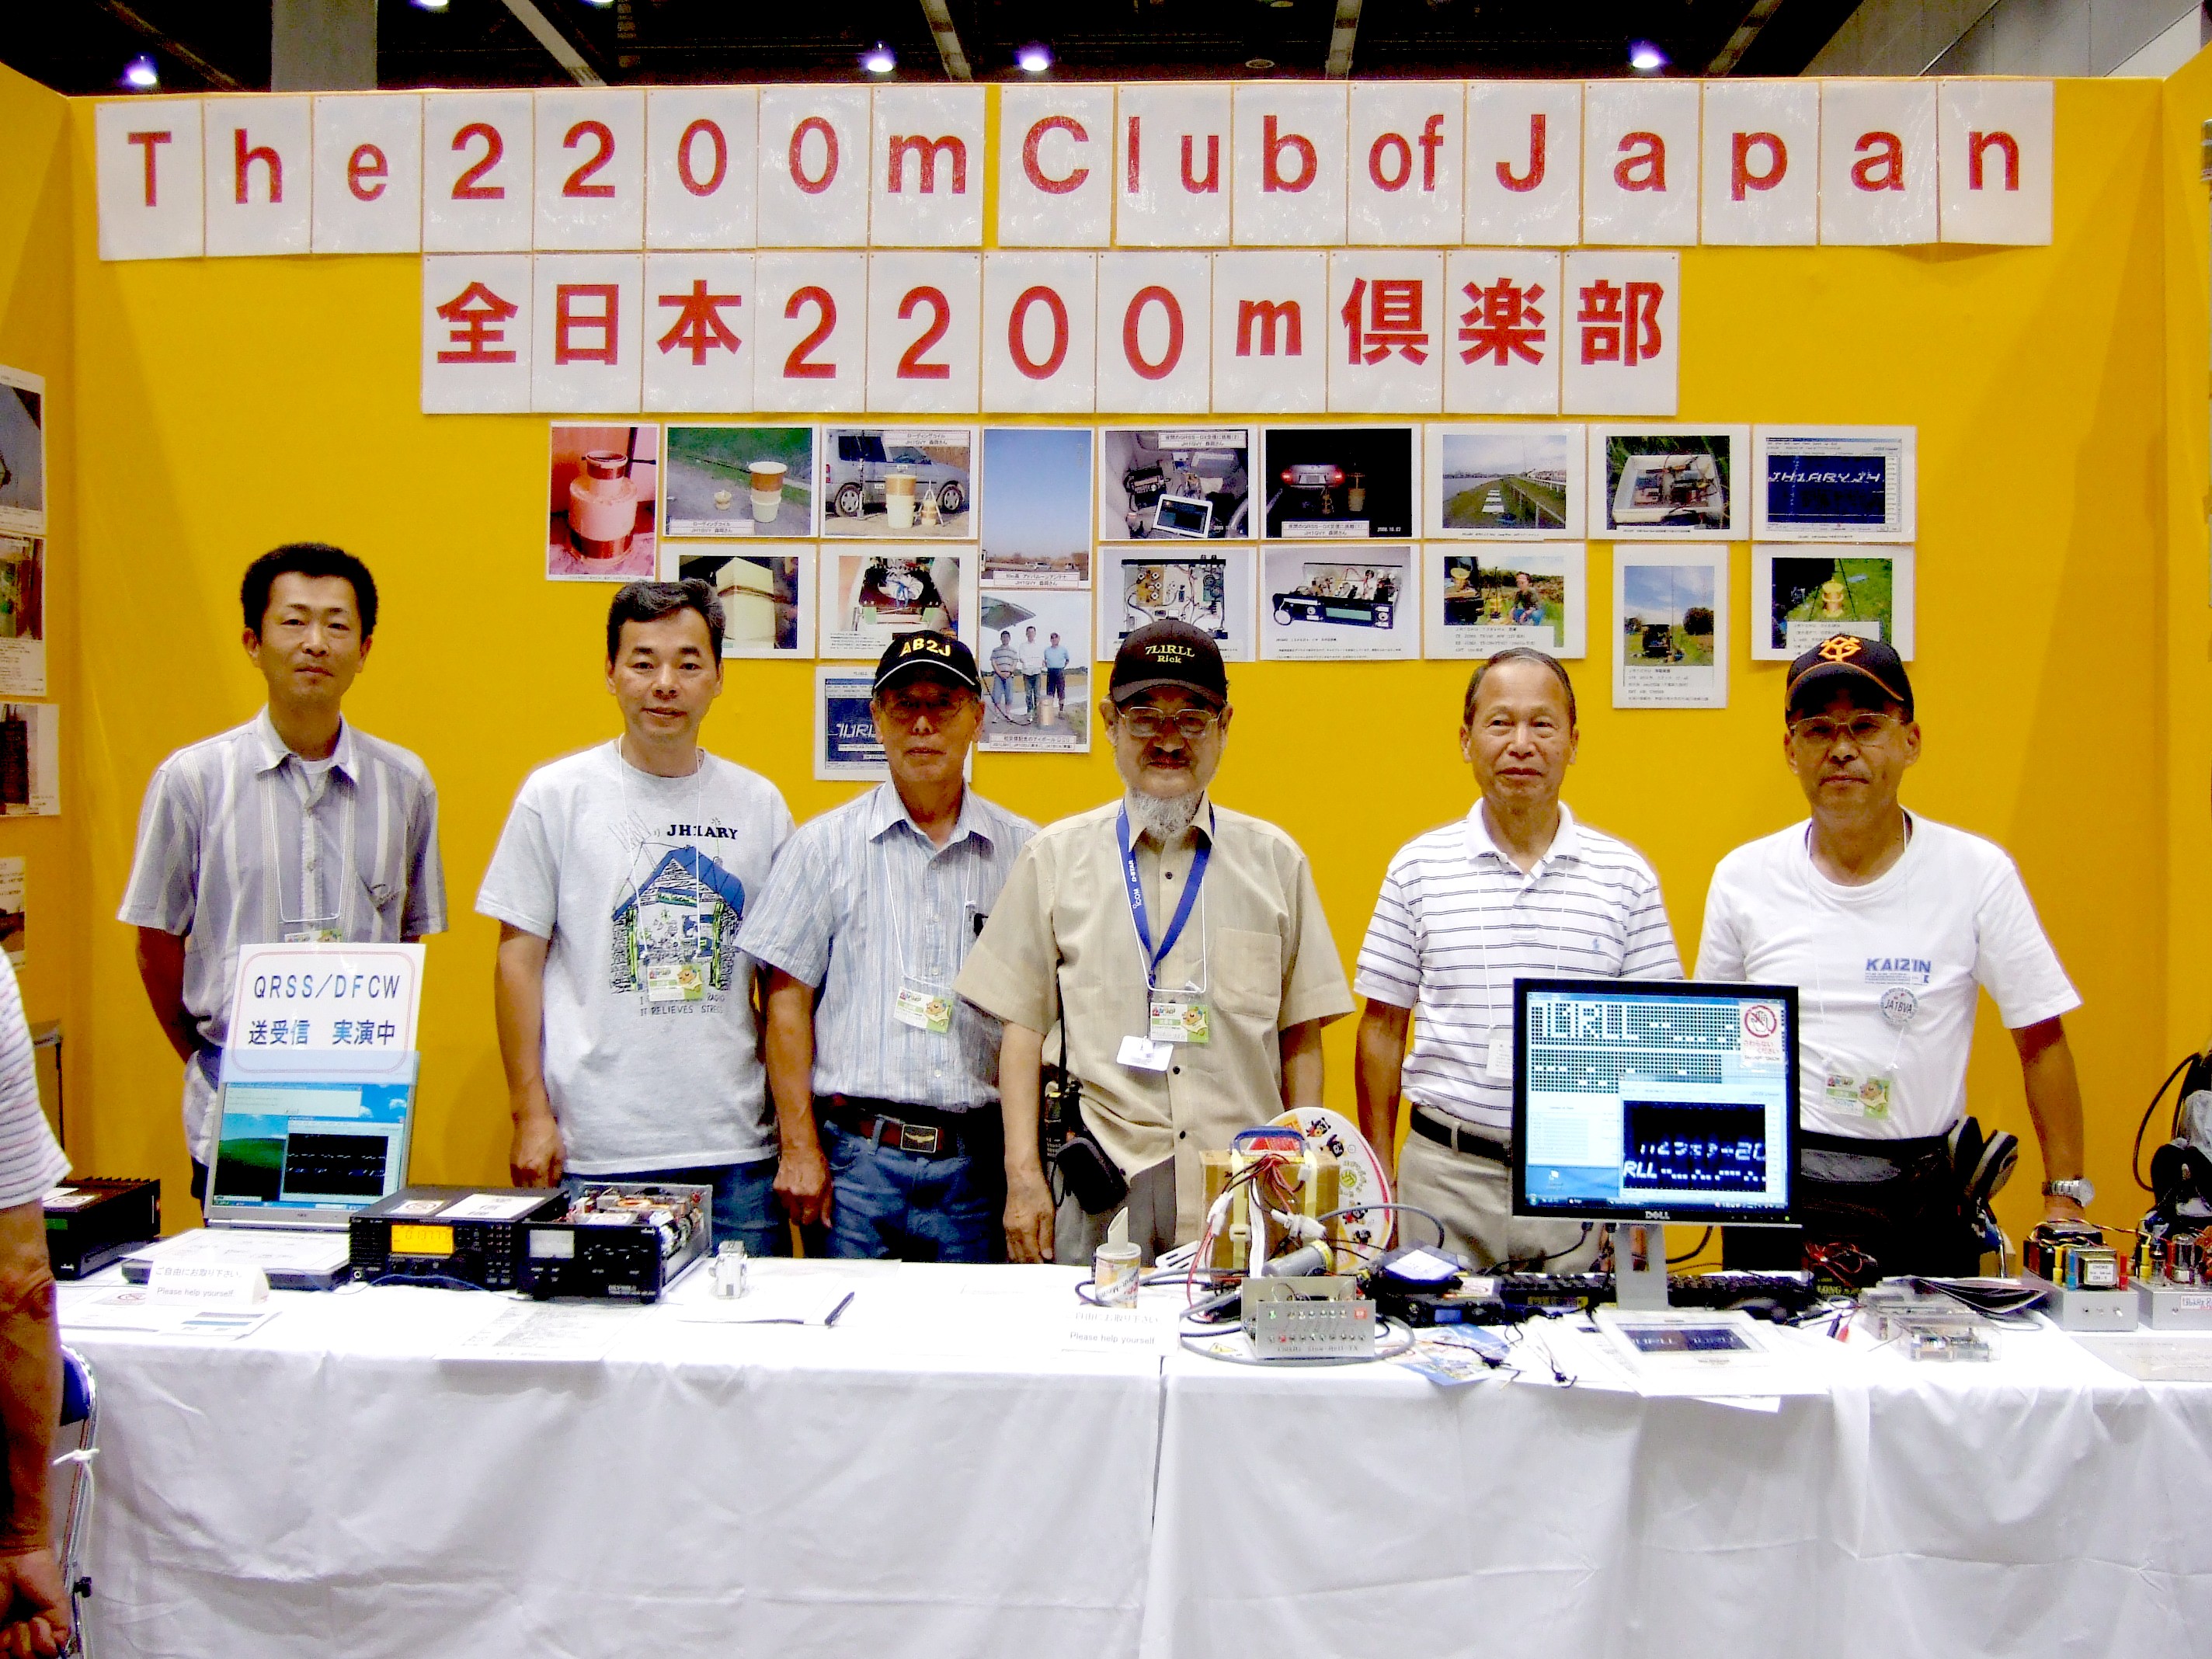 The 2200mClub booth at HAM Fair Tokyo 2010